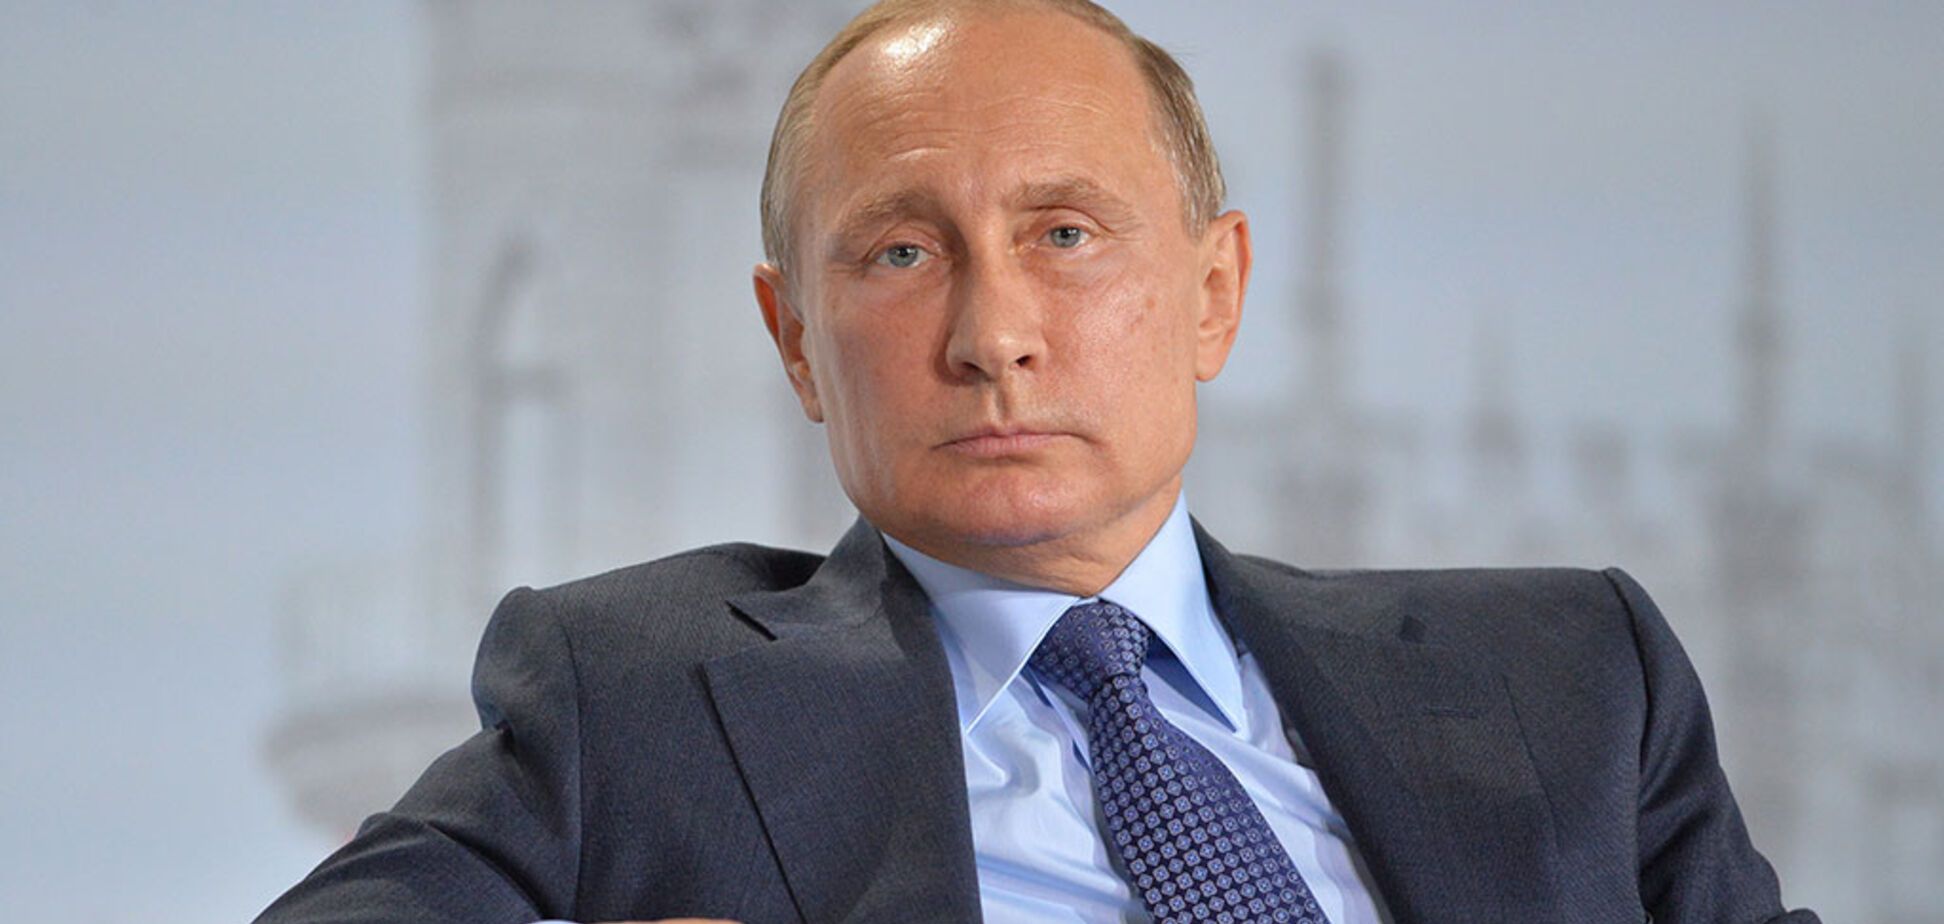 'Как Моисеев после третьего инсульта': Путин взволновал российского ученого внешним видом